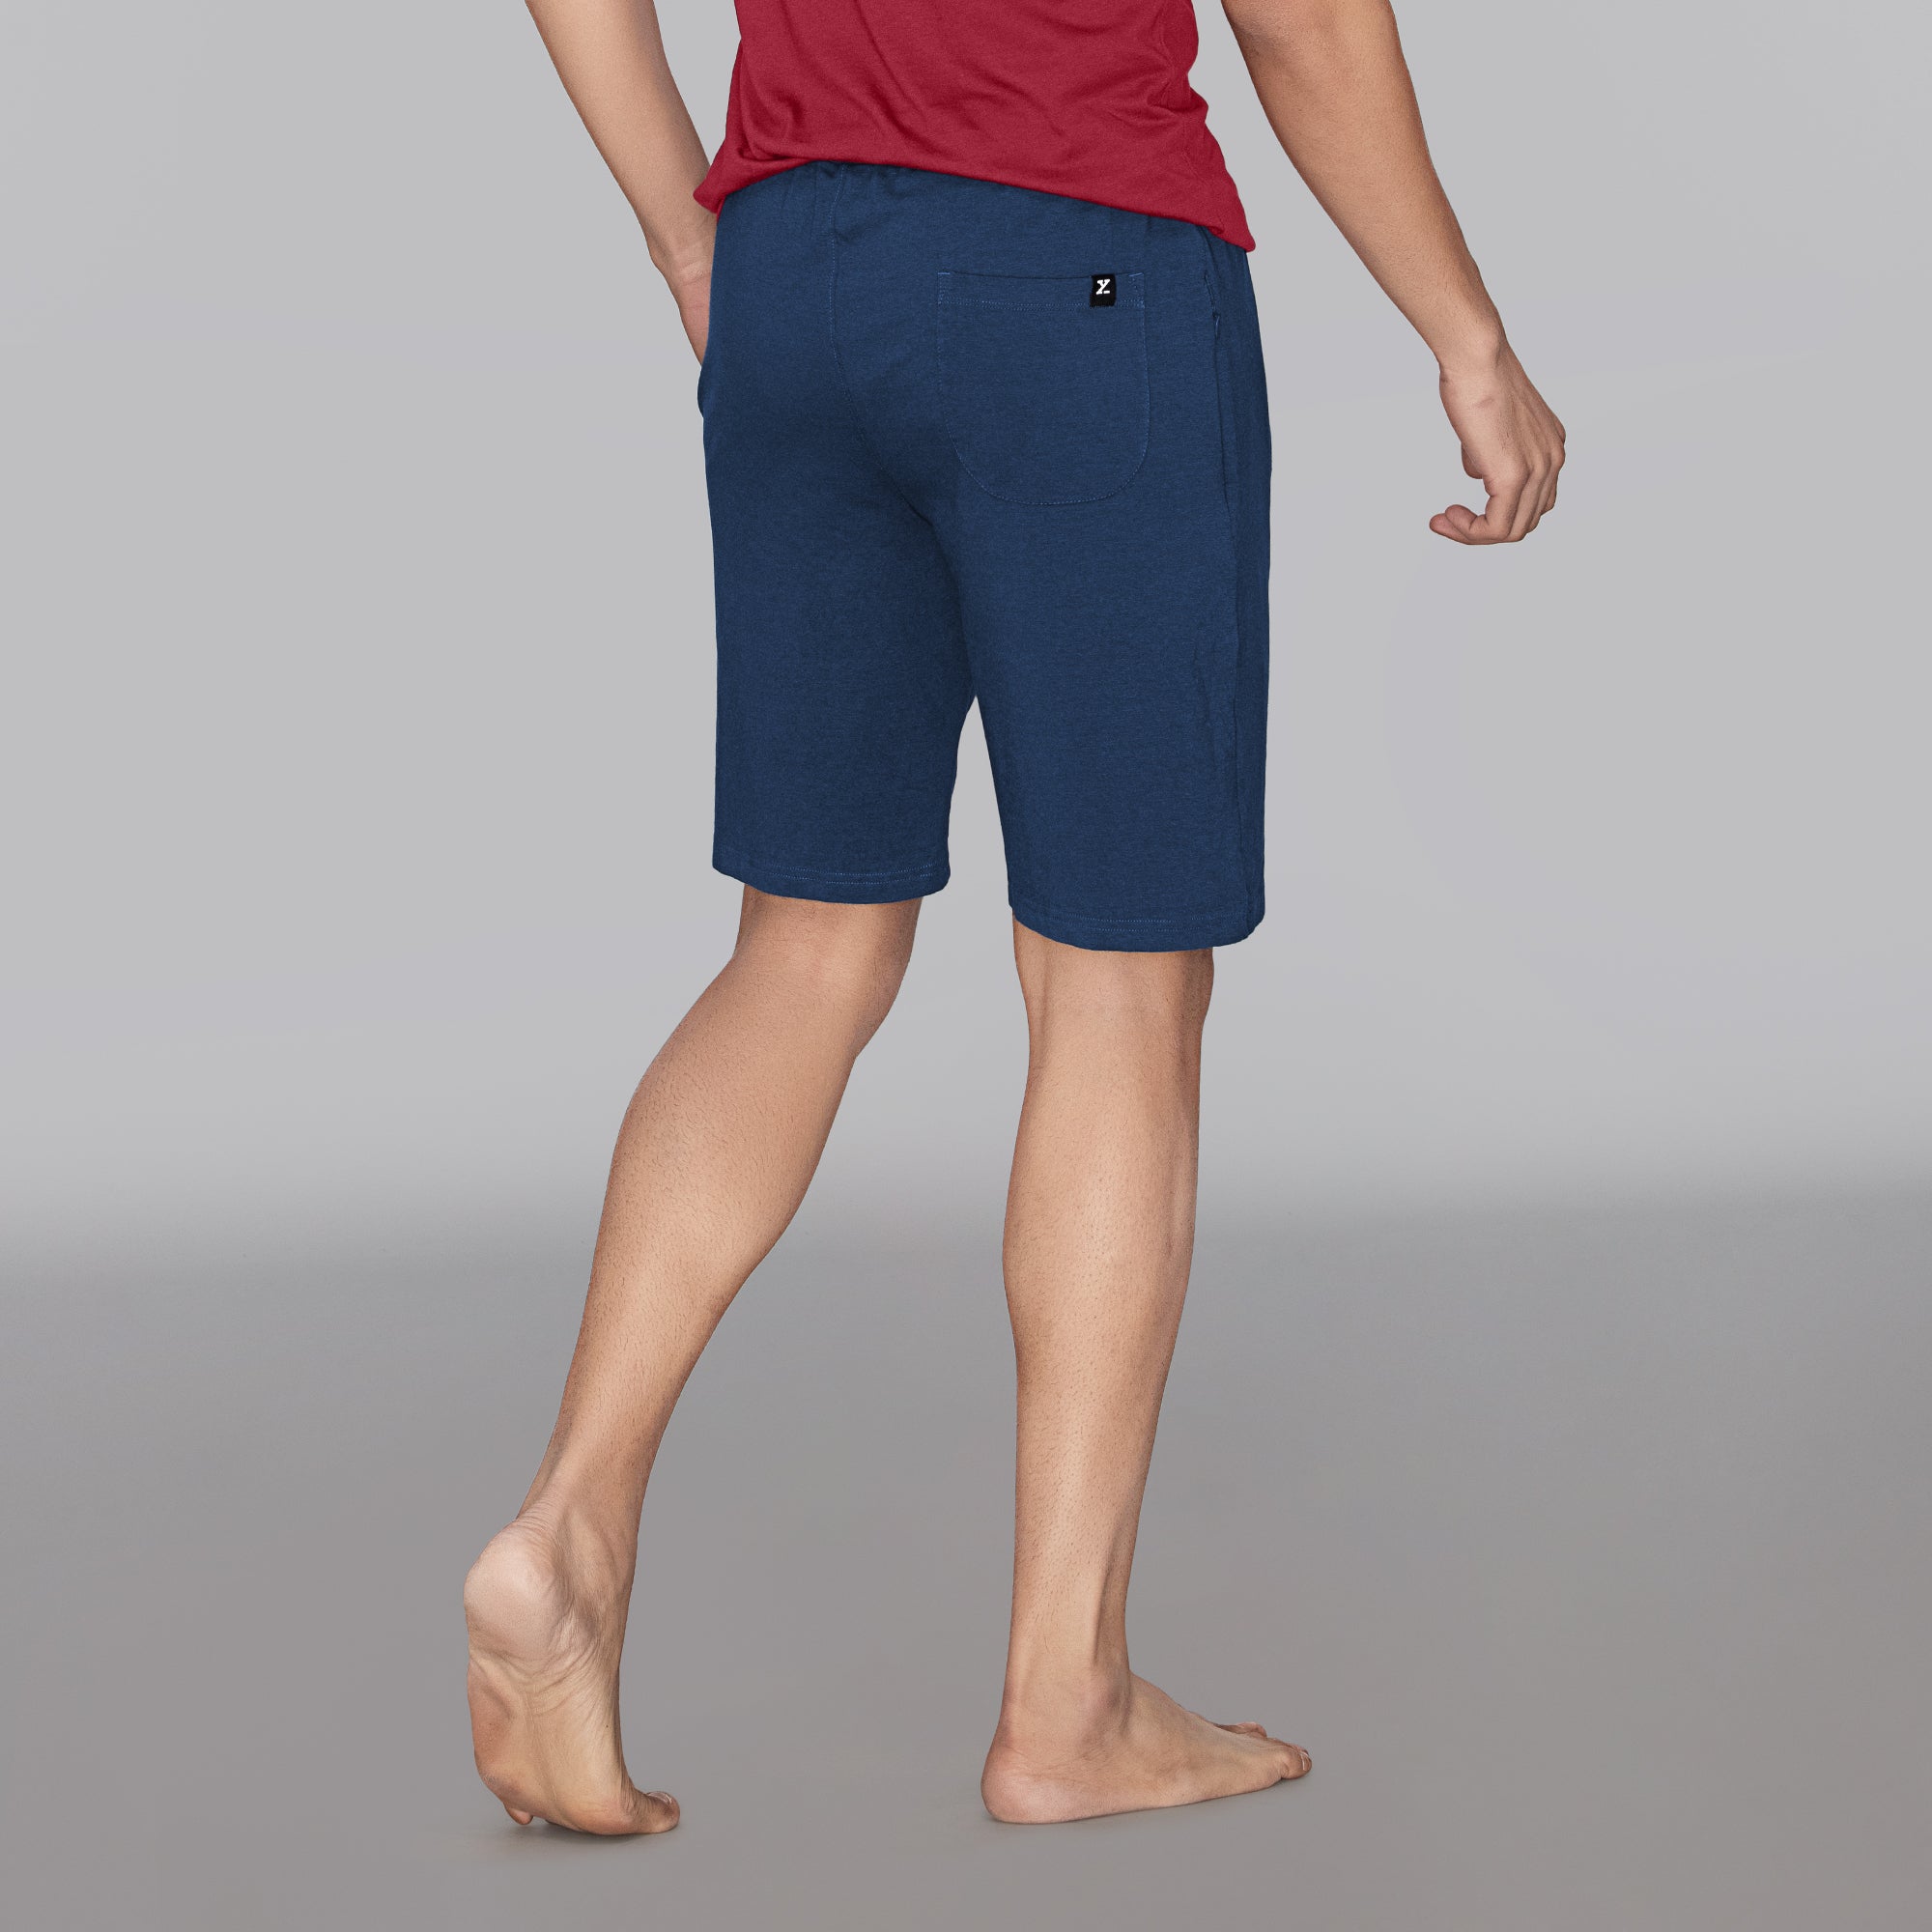 Cotton Shorts for Men